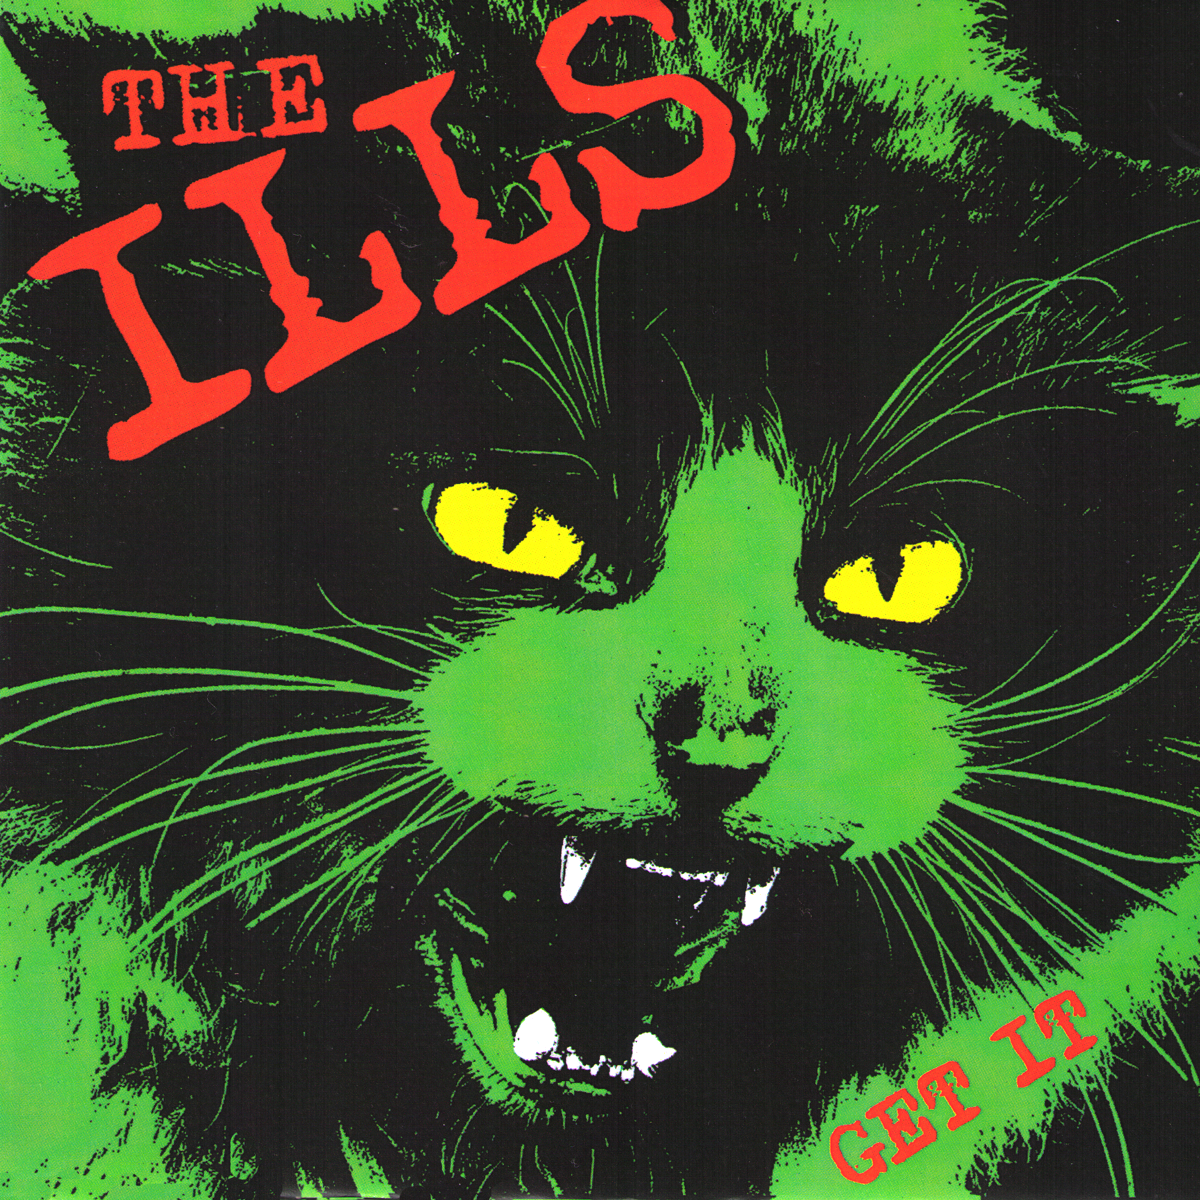 The Ills- Get It 7” ~RARE CAT COVER CVR LTD TO 50 COPIES!